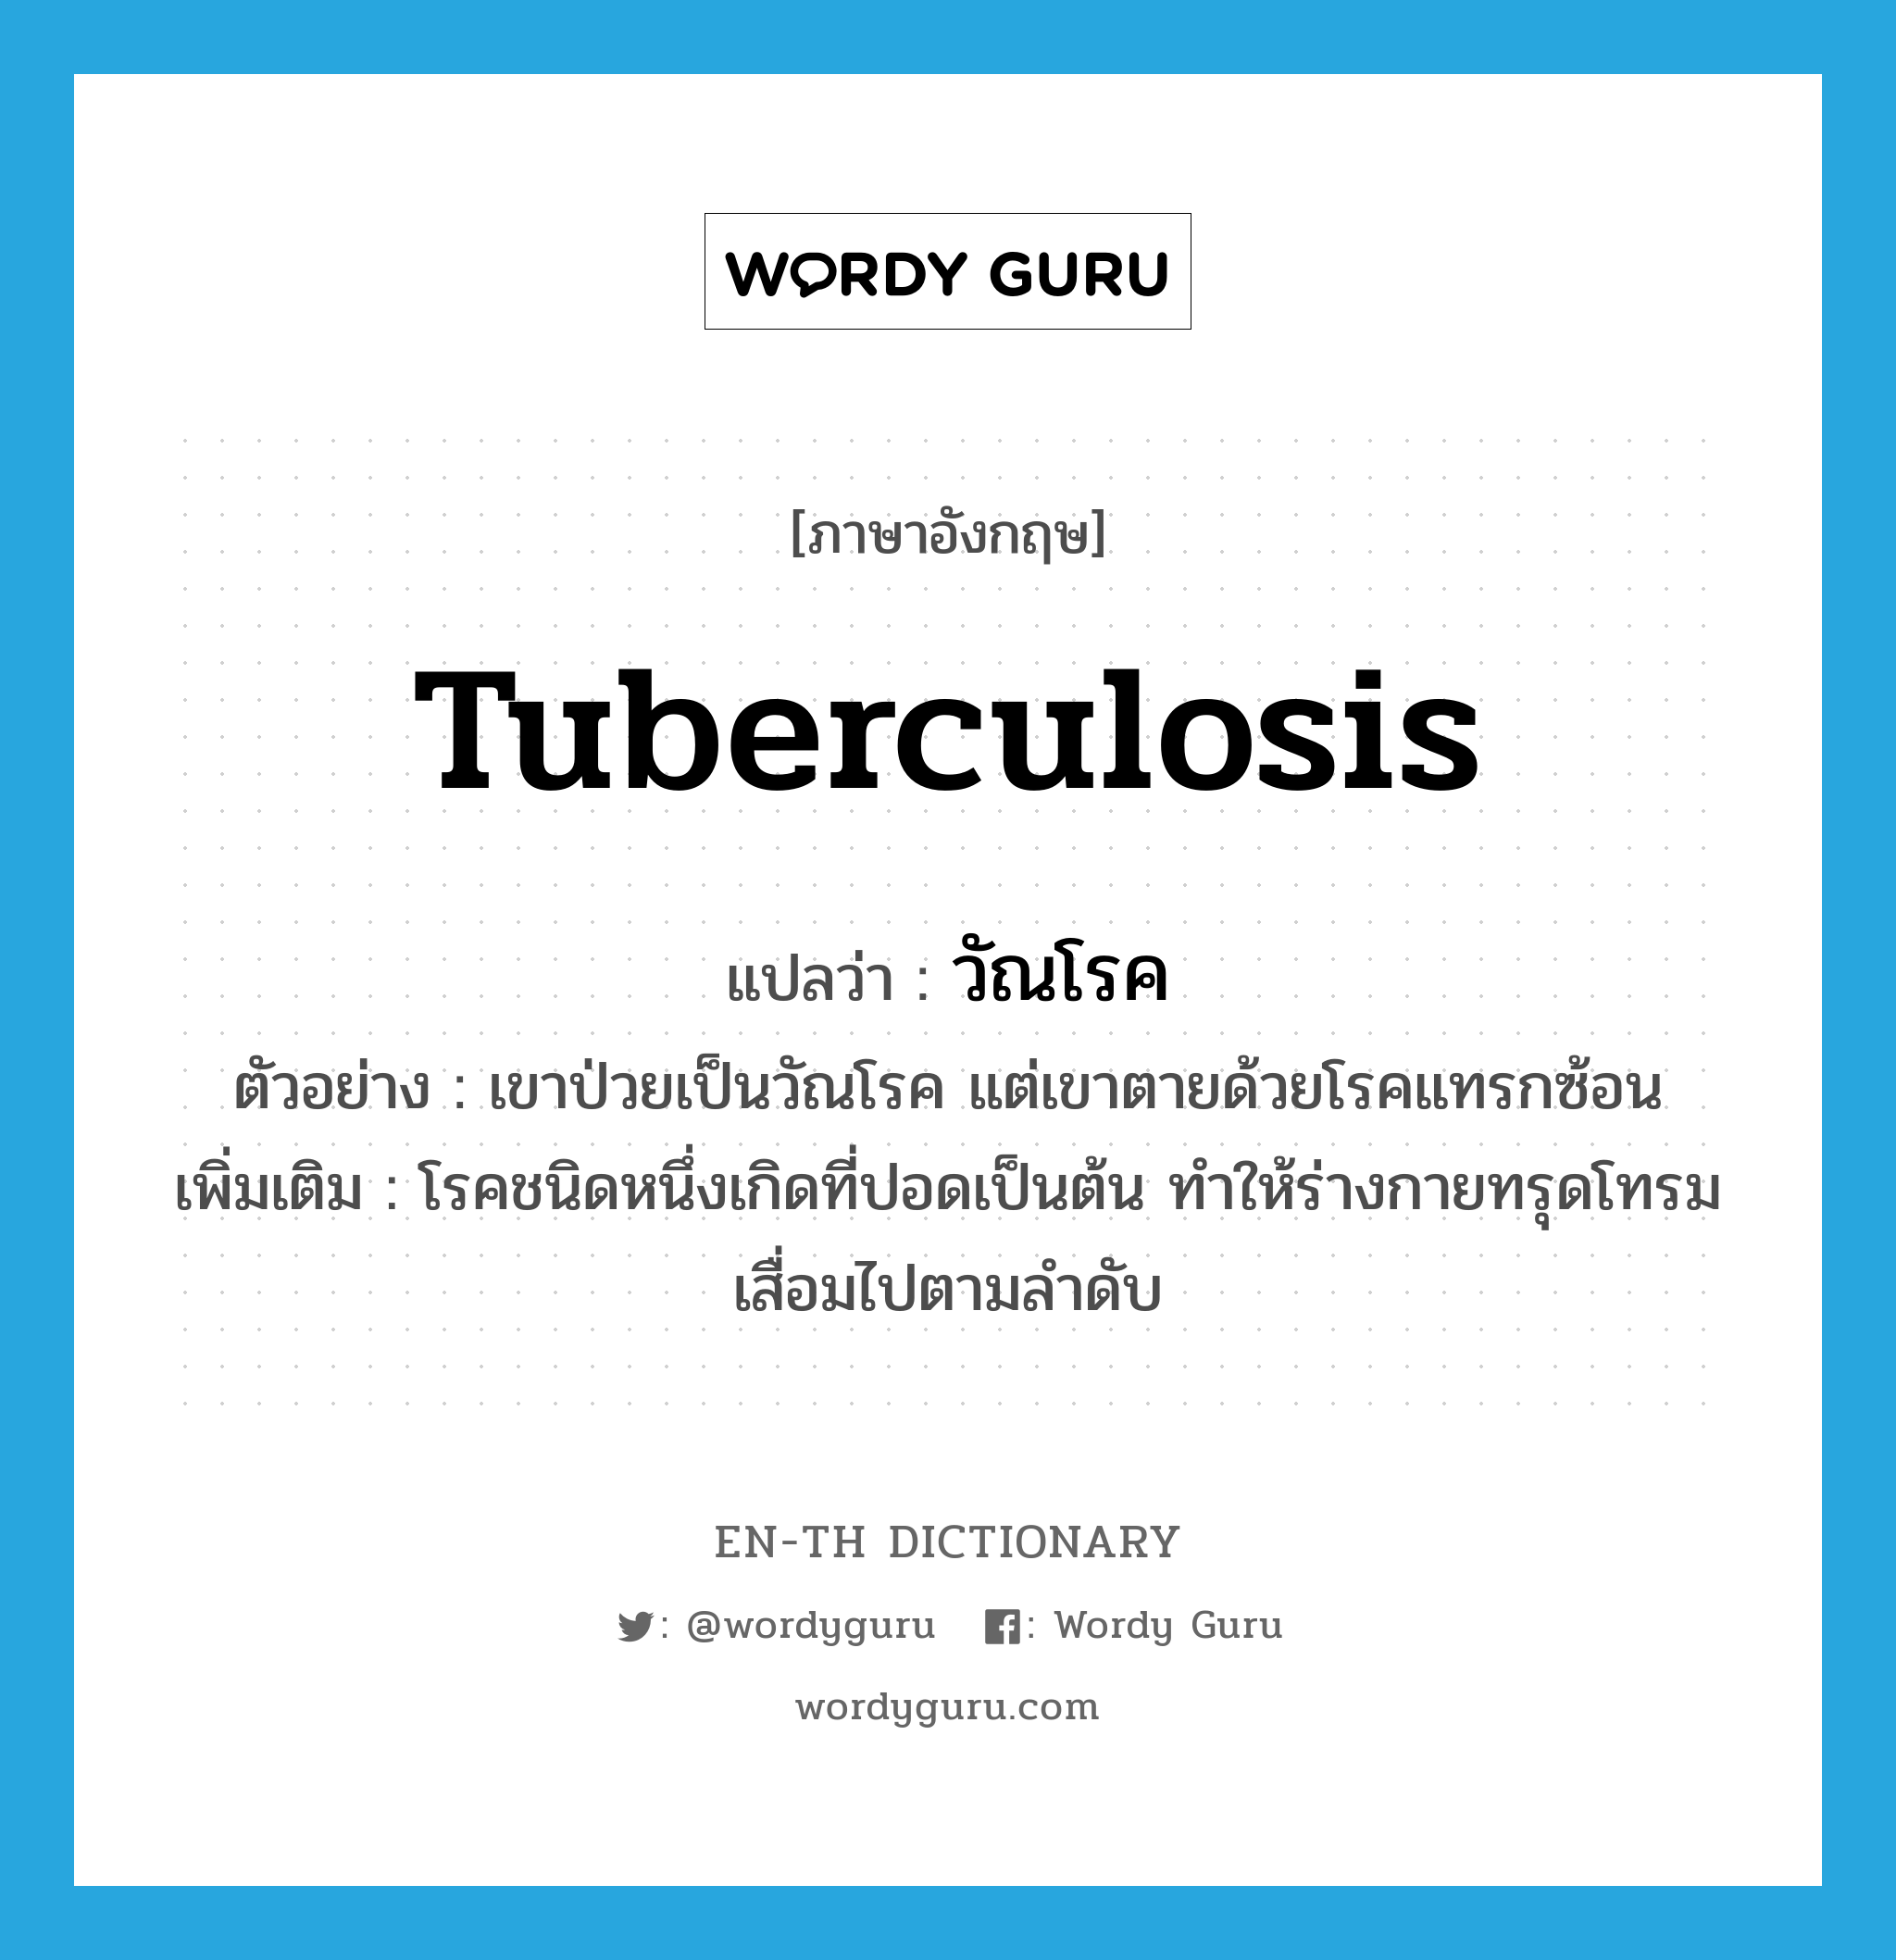 tuberculosis แปลว่า?, คำศัพท์ภาษาอังกฤษ tuberculosis แปลว่า วัณโรค ประเภท N ตัวอย่าง เขาป่วยเป็นวัณโรค แต่เขาตายด้วยโรคแทรกซ้อน เพิ่มเติม โรคชนิดหนึ่งเกิดที่ปอดเป็นต้น ทำให้ร่างกายทรุดโทรมเสื่อมไปตามลำดับ หมวด N